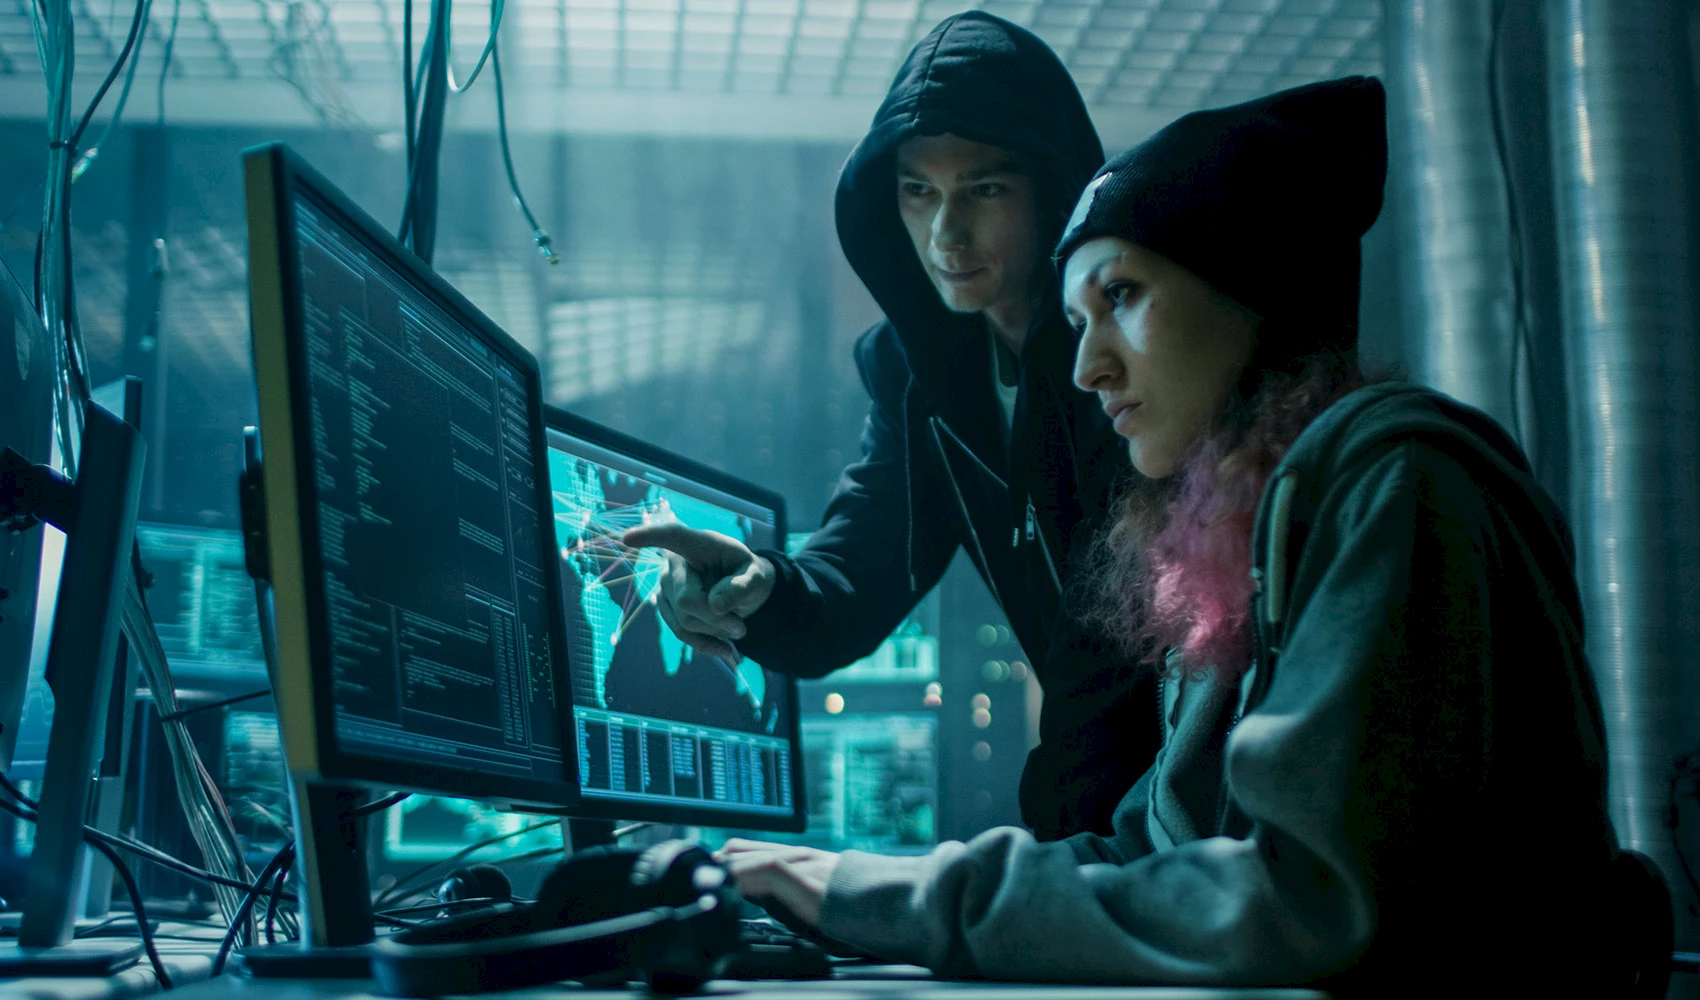 Why do hacker always wear hoodies?